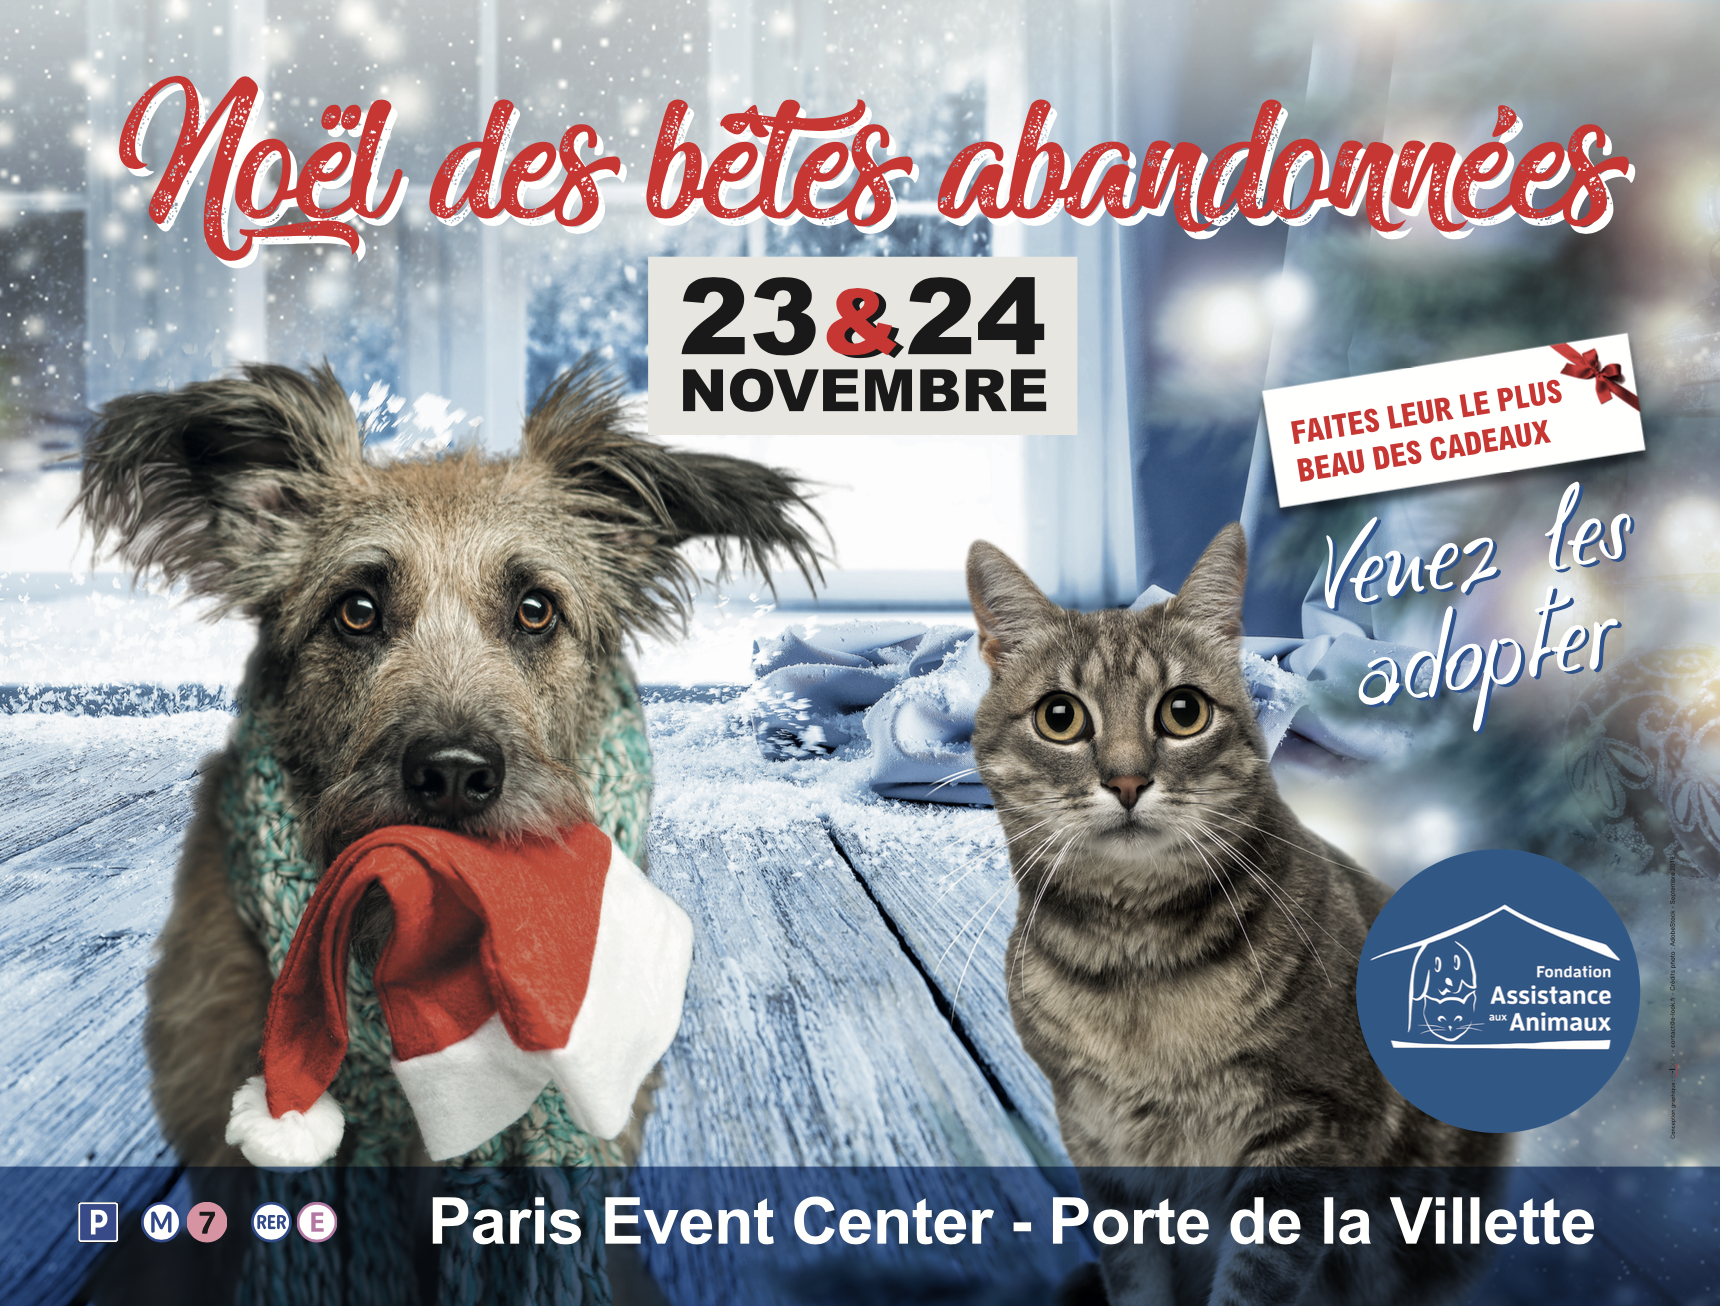 Un Evenement A Ne Pas Manquer Le Noel Des Betes Abandonnees A Paris Les 23 Et 24 Novembre Fondation Assistance Aux Animaux Actualites